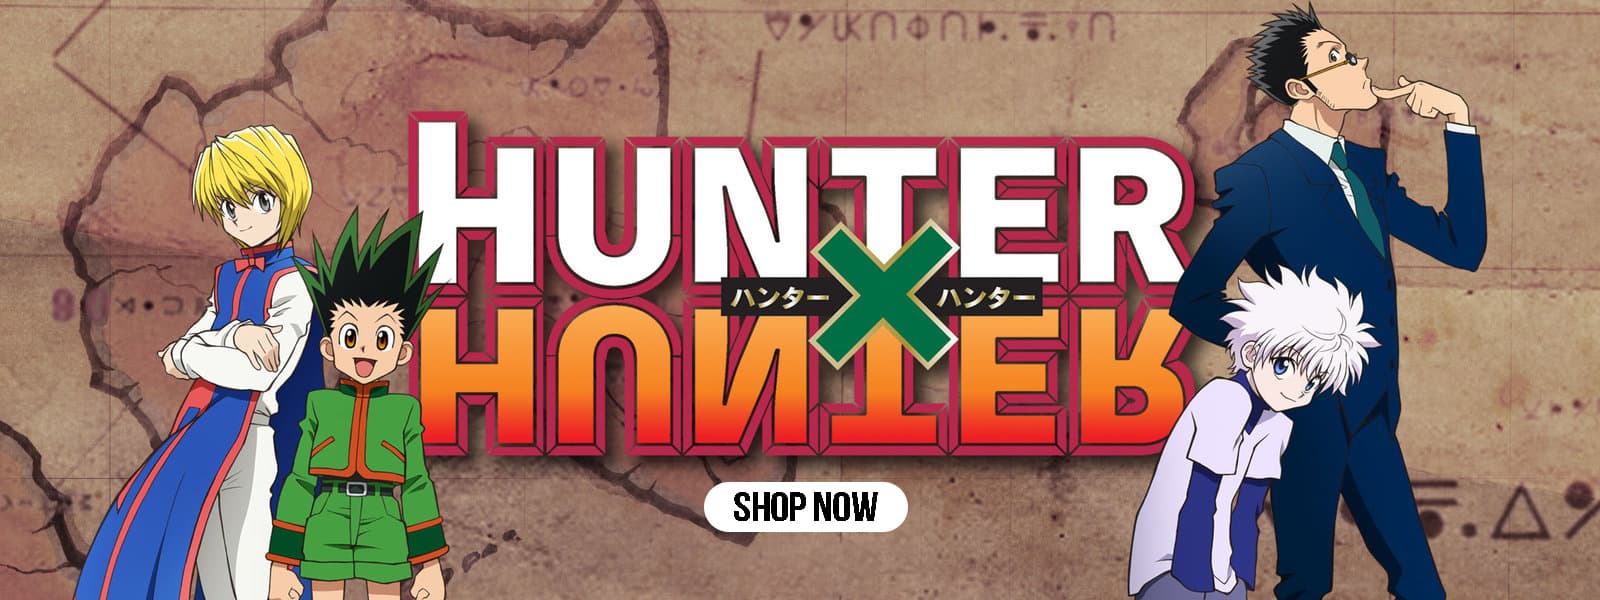 Hunter X Hunter Store Banner